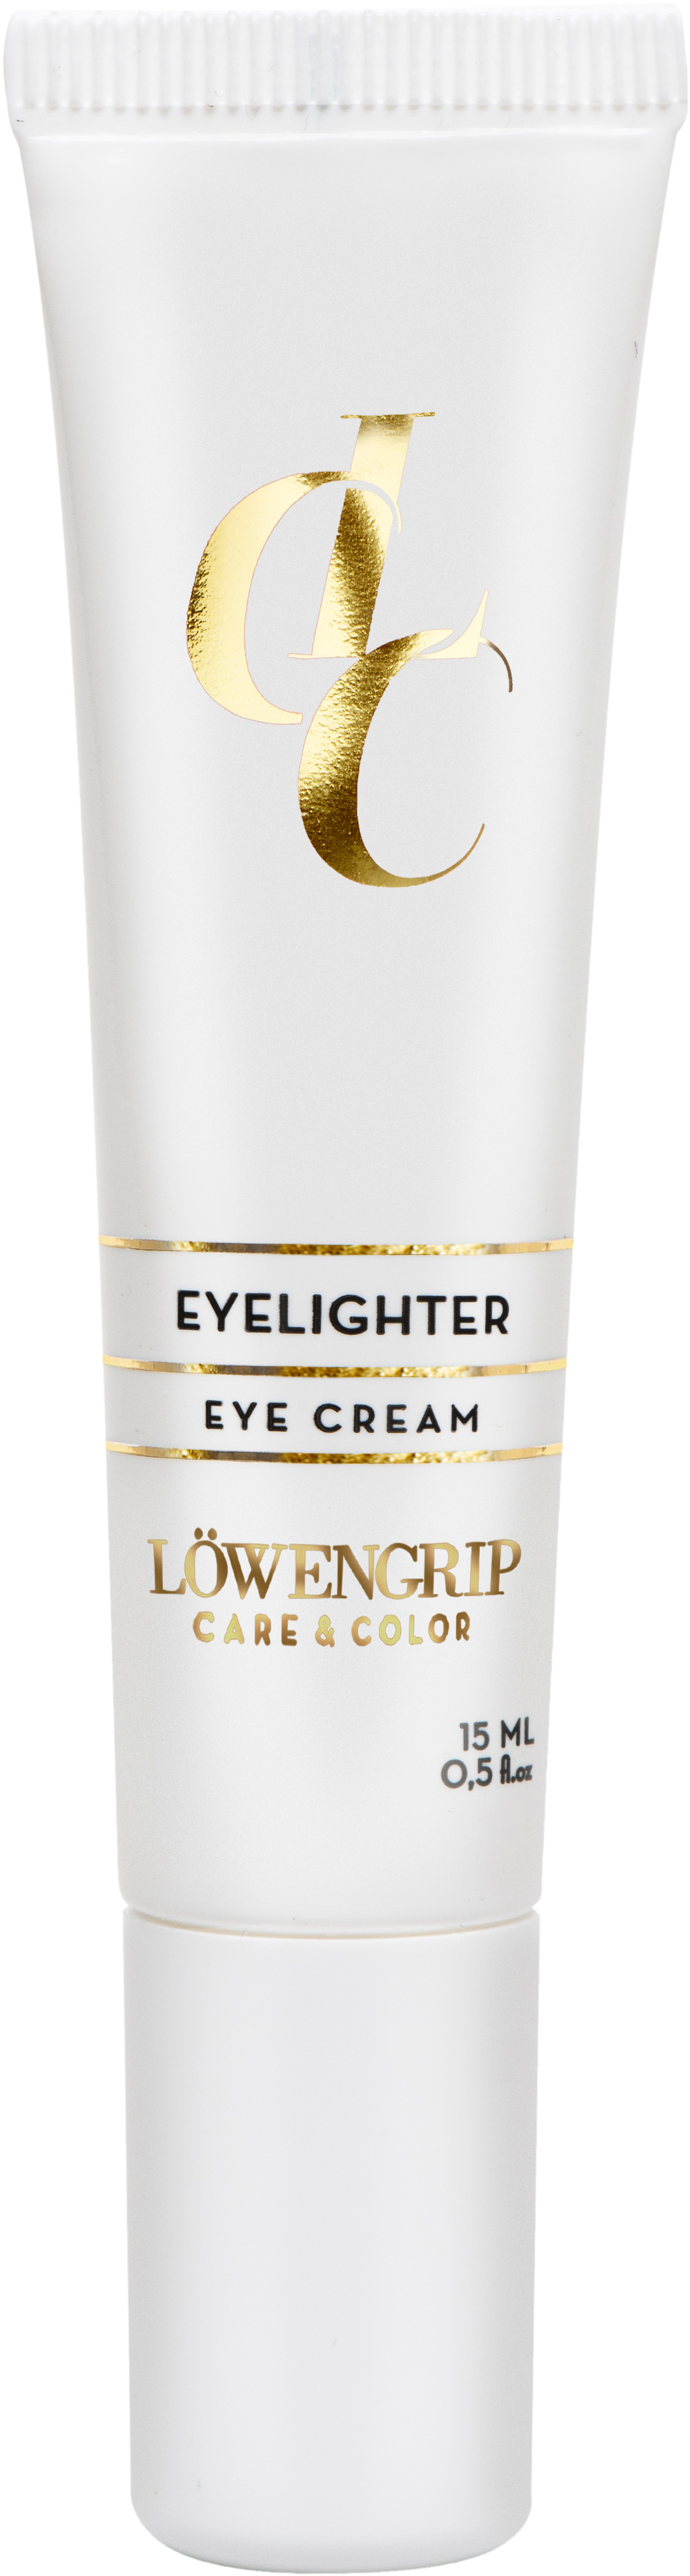 Löwengrip Care & Color Eye Cream